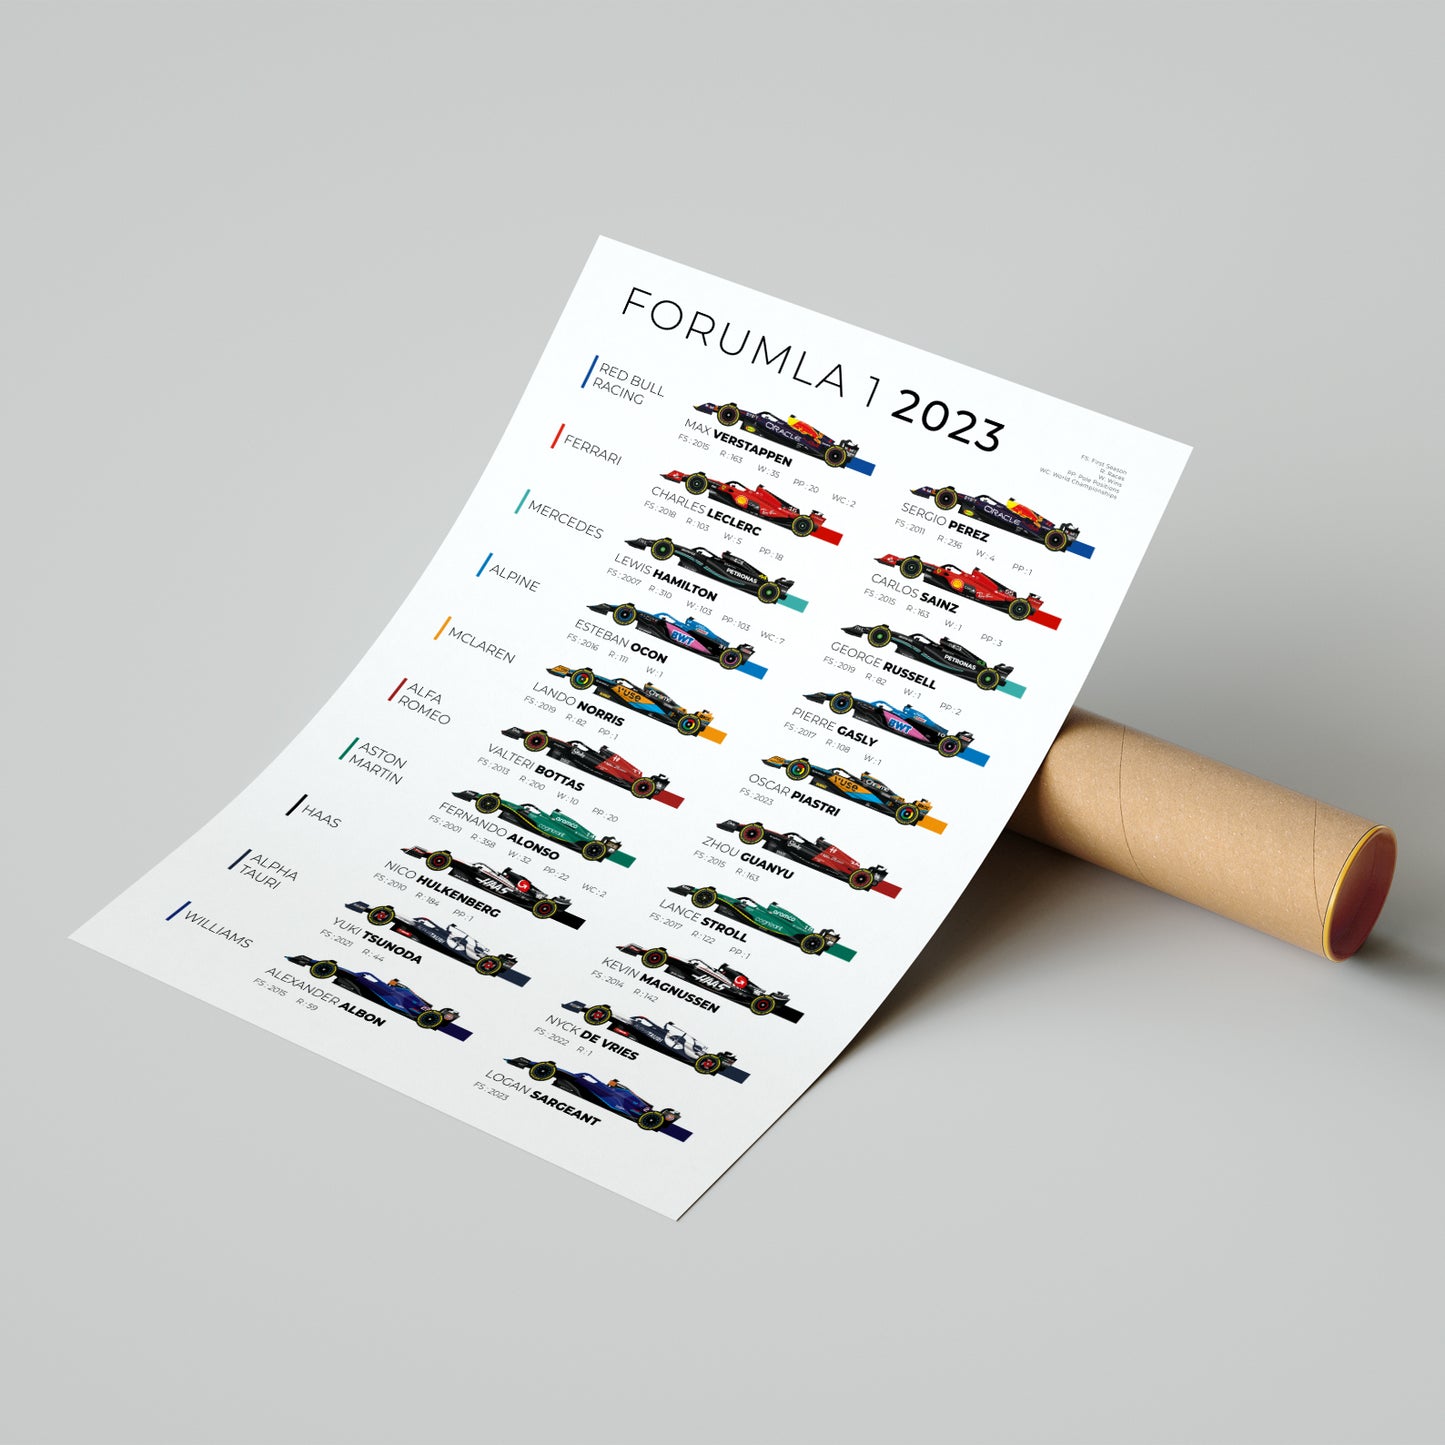 Équipes et pilotes de Formule 1 2023 Poster